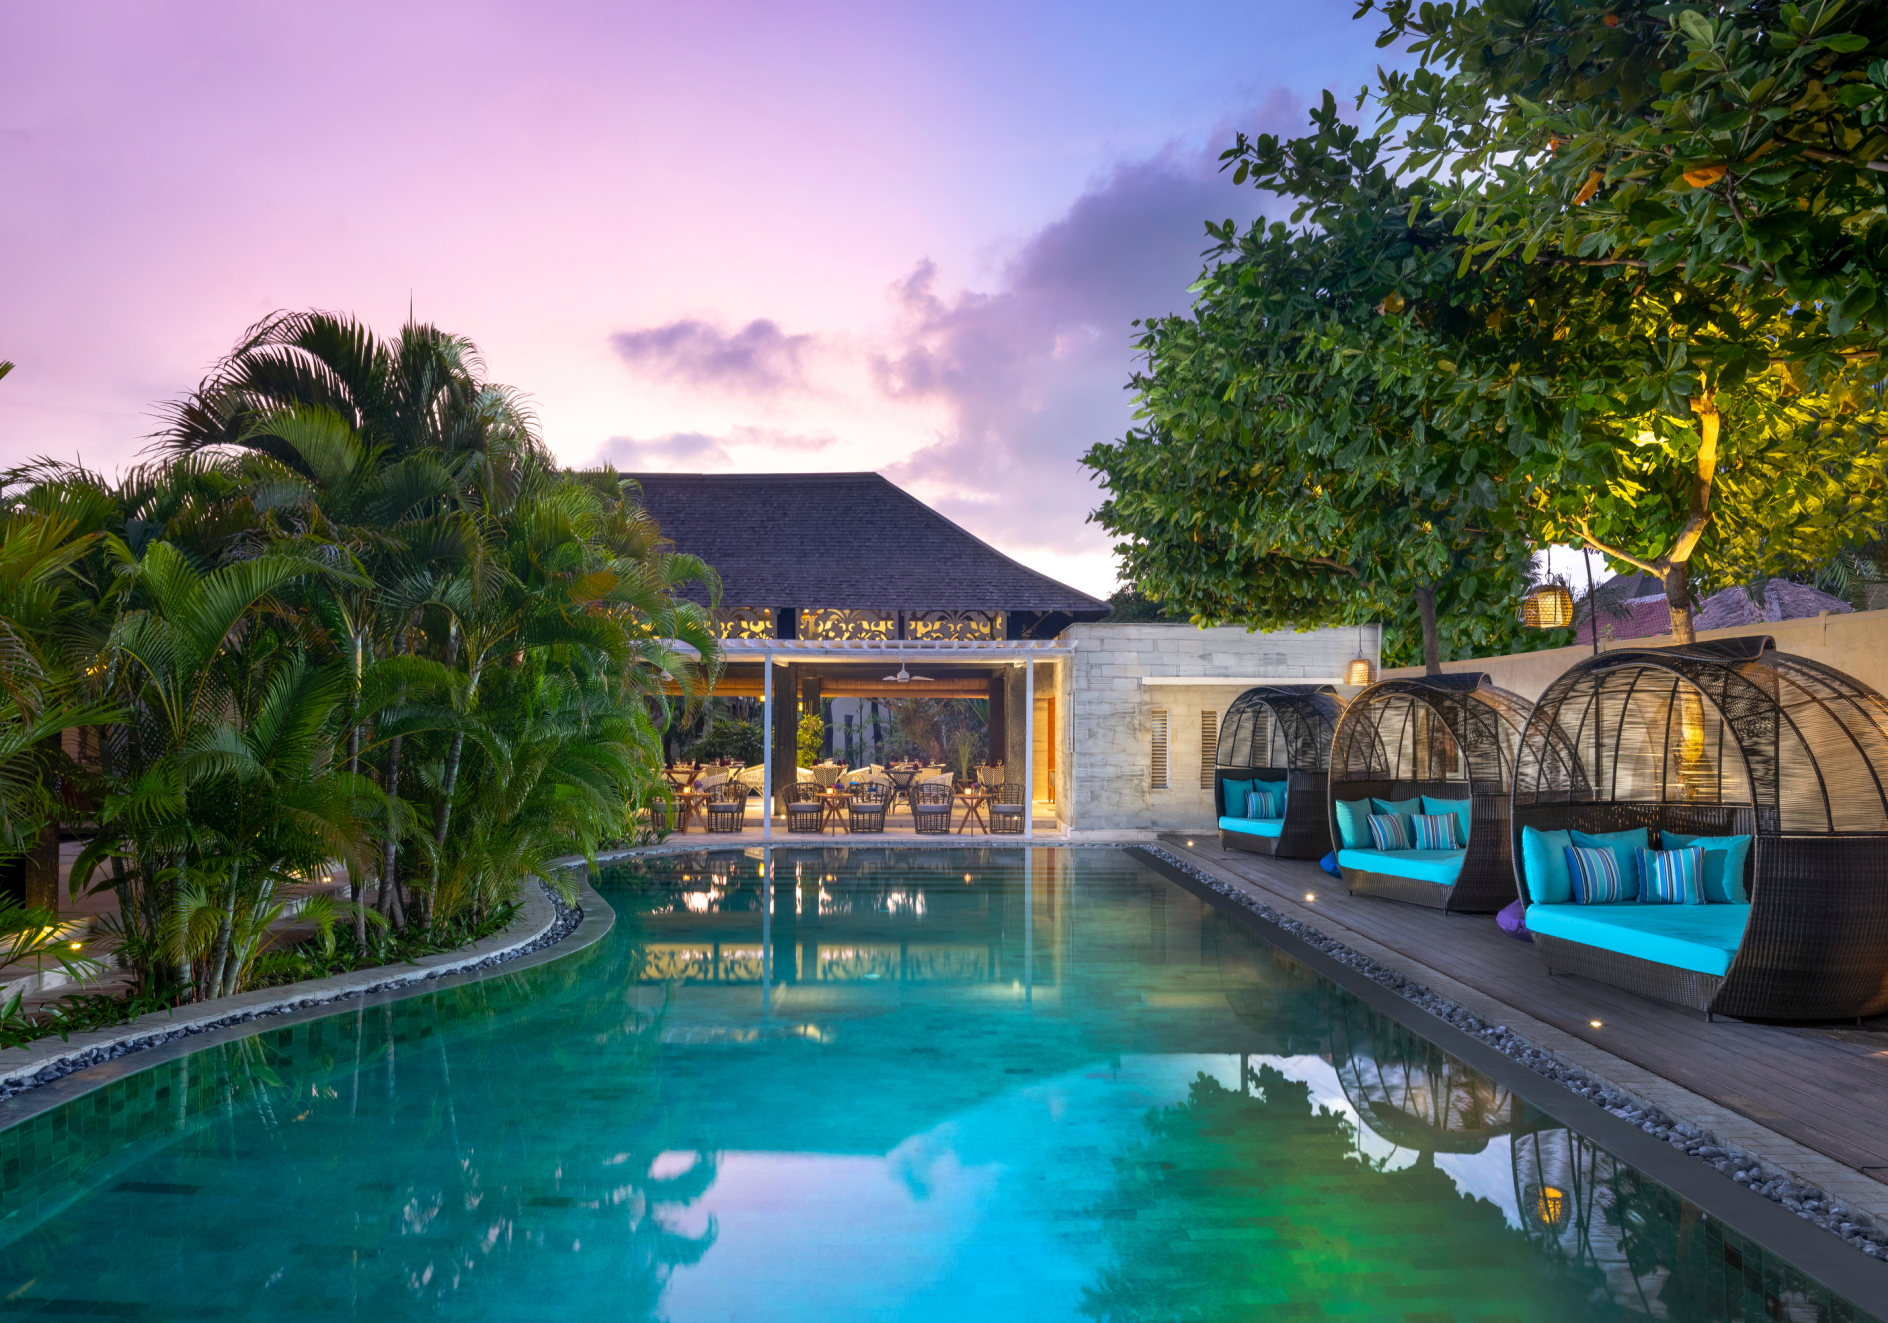 Pool at the Avani Seminyak Bali Resort. Click to enlarge.